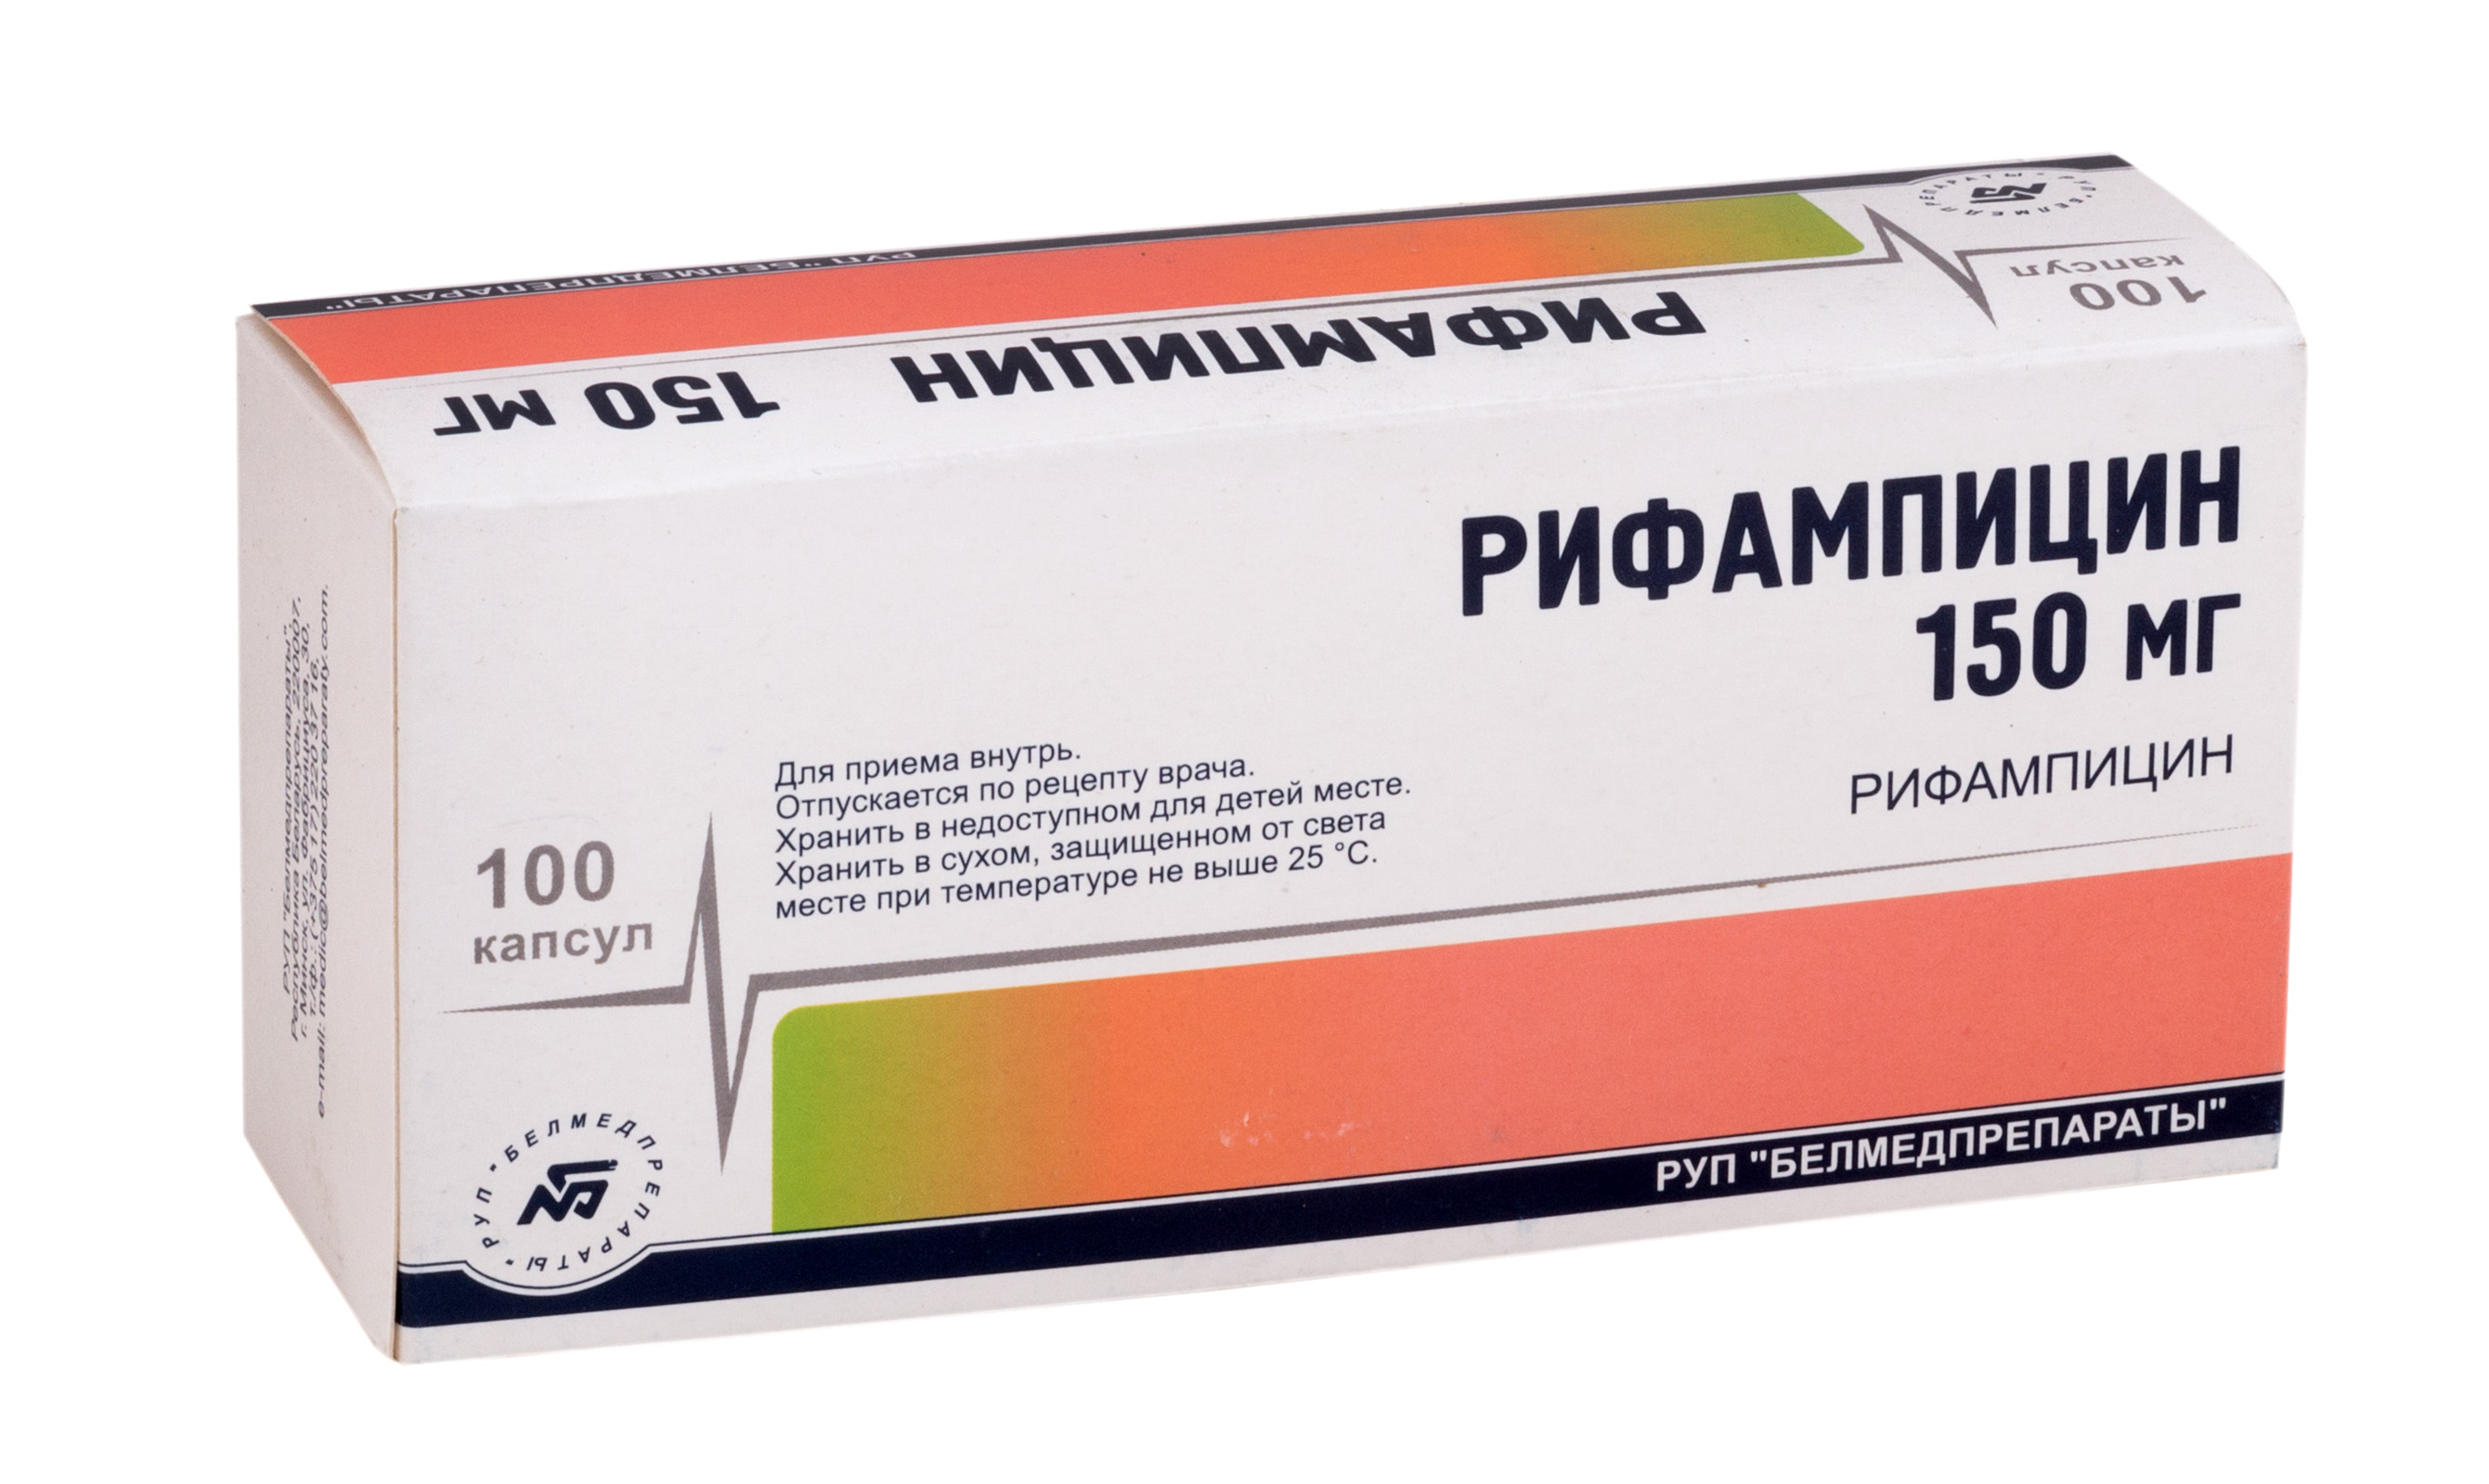 Aptekirls :: Рифампицин капс 150 мг №100 — заказать онлайн и  .